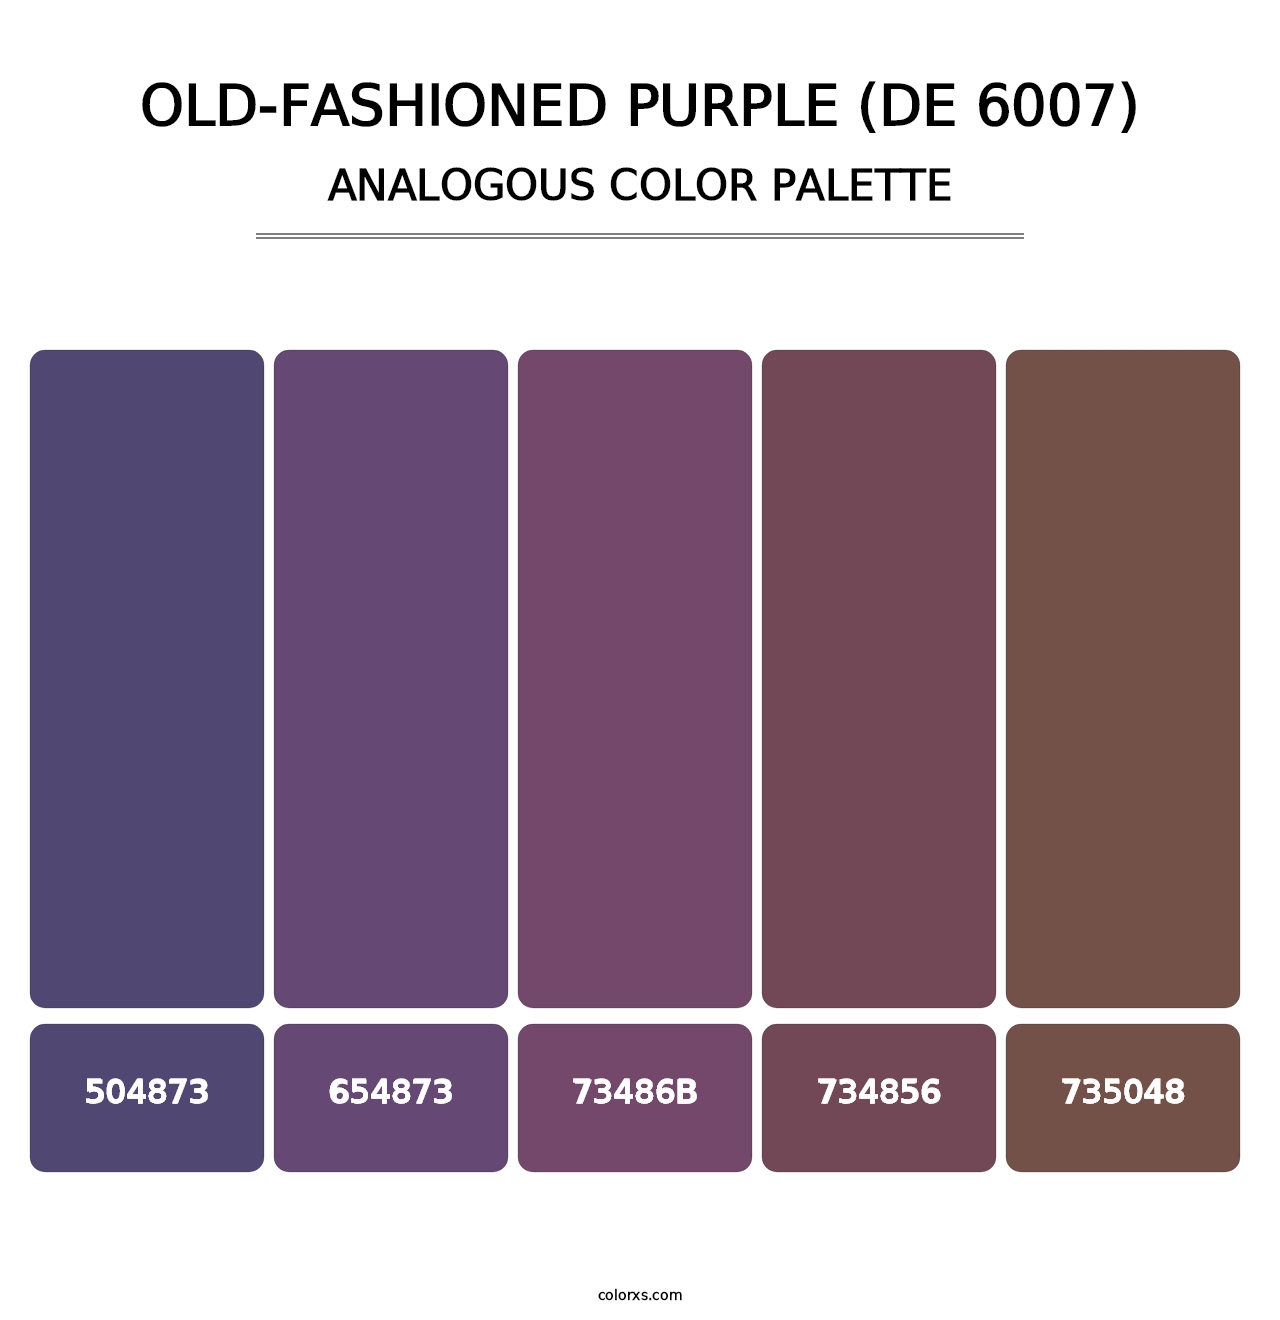 Old-Fashioned Purple (DE 6007) - Analogous Color Palette